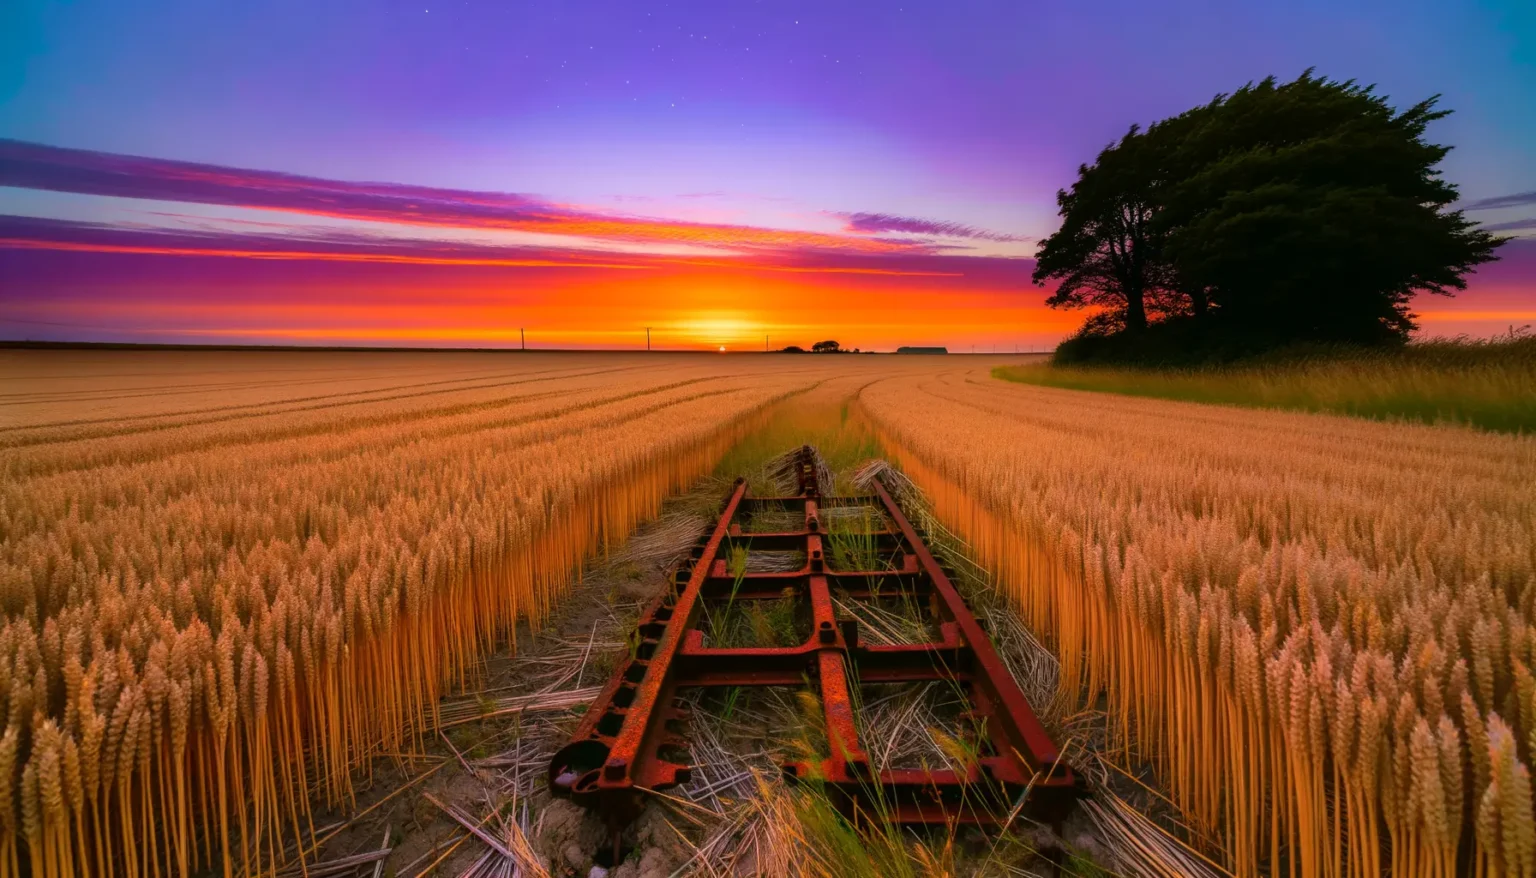 Ein leuchtender Sonnenuntergang mit einem farbenfrohen Himmel in lila und orangen Tönen über einem Weizenfeld, durch das sich eine verrostete, aufgegebene Feldbahn zieht. Ein Baum steht im Wind an der rechten Seite des Feldes, das Bild vermittelt eine Atmosphäre der Ruhe und des Vergehens.